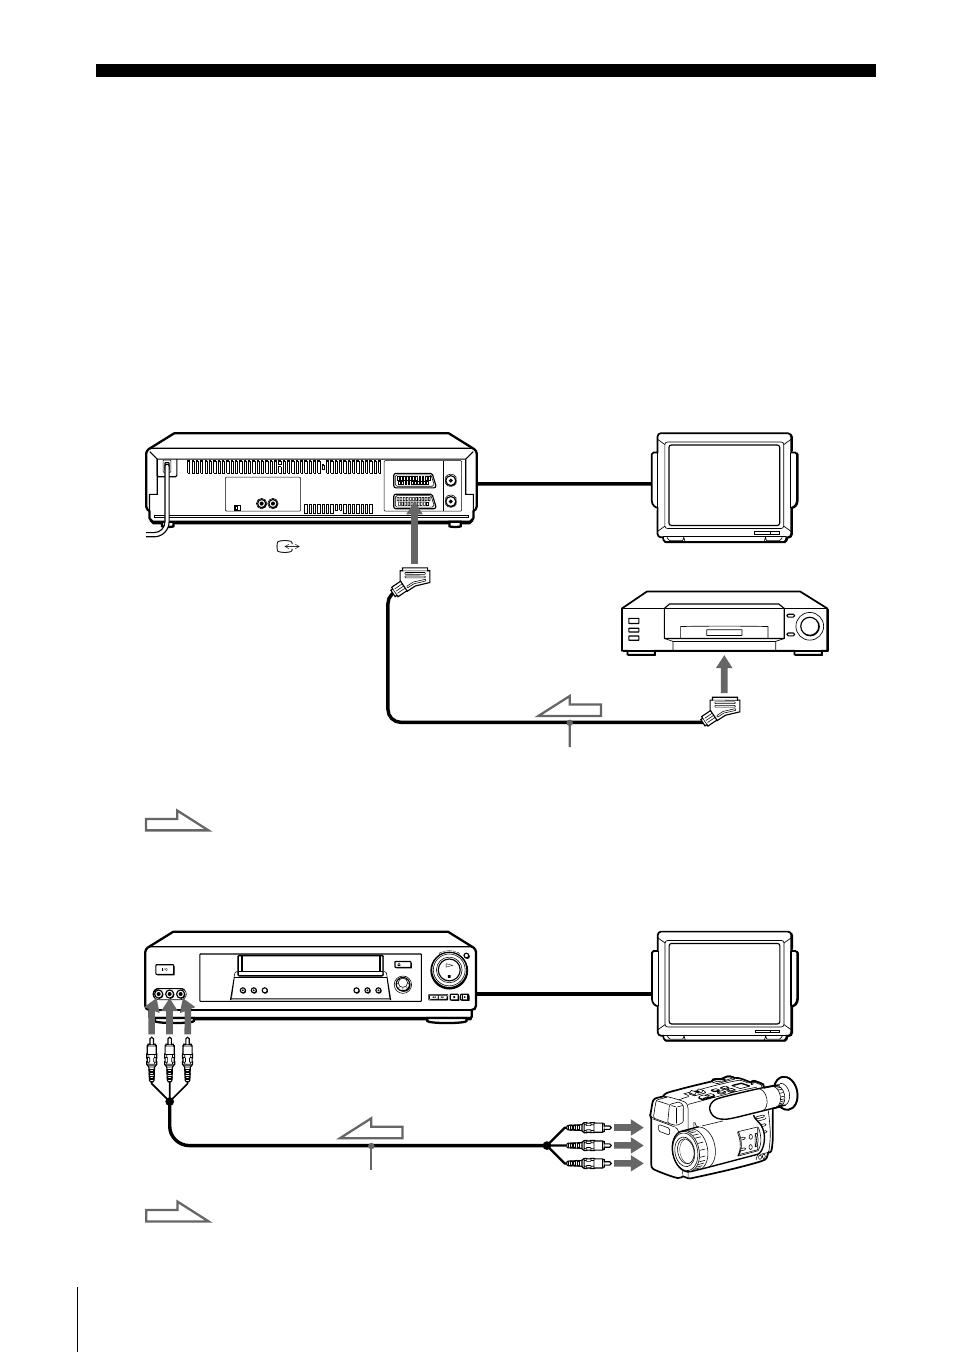 Edición, Conexión a una videograbadora o sistema estéreo | Sony SLV-SE800D1 Manual del usuario | Página 82 / 100